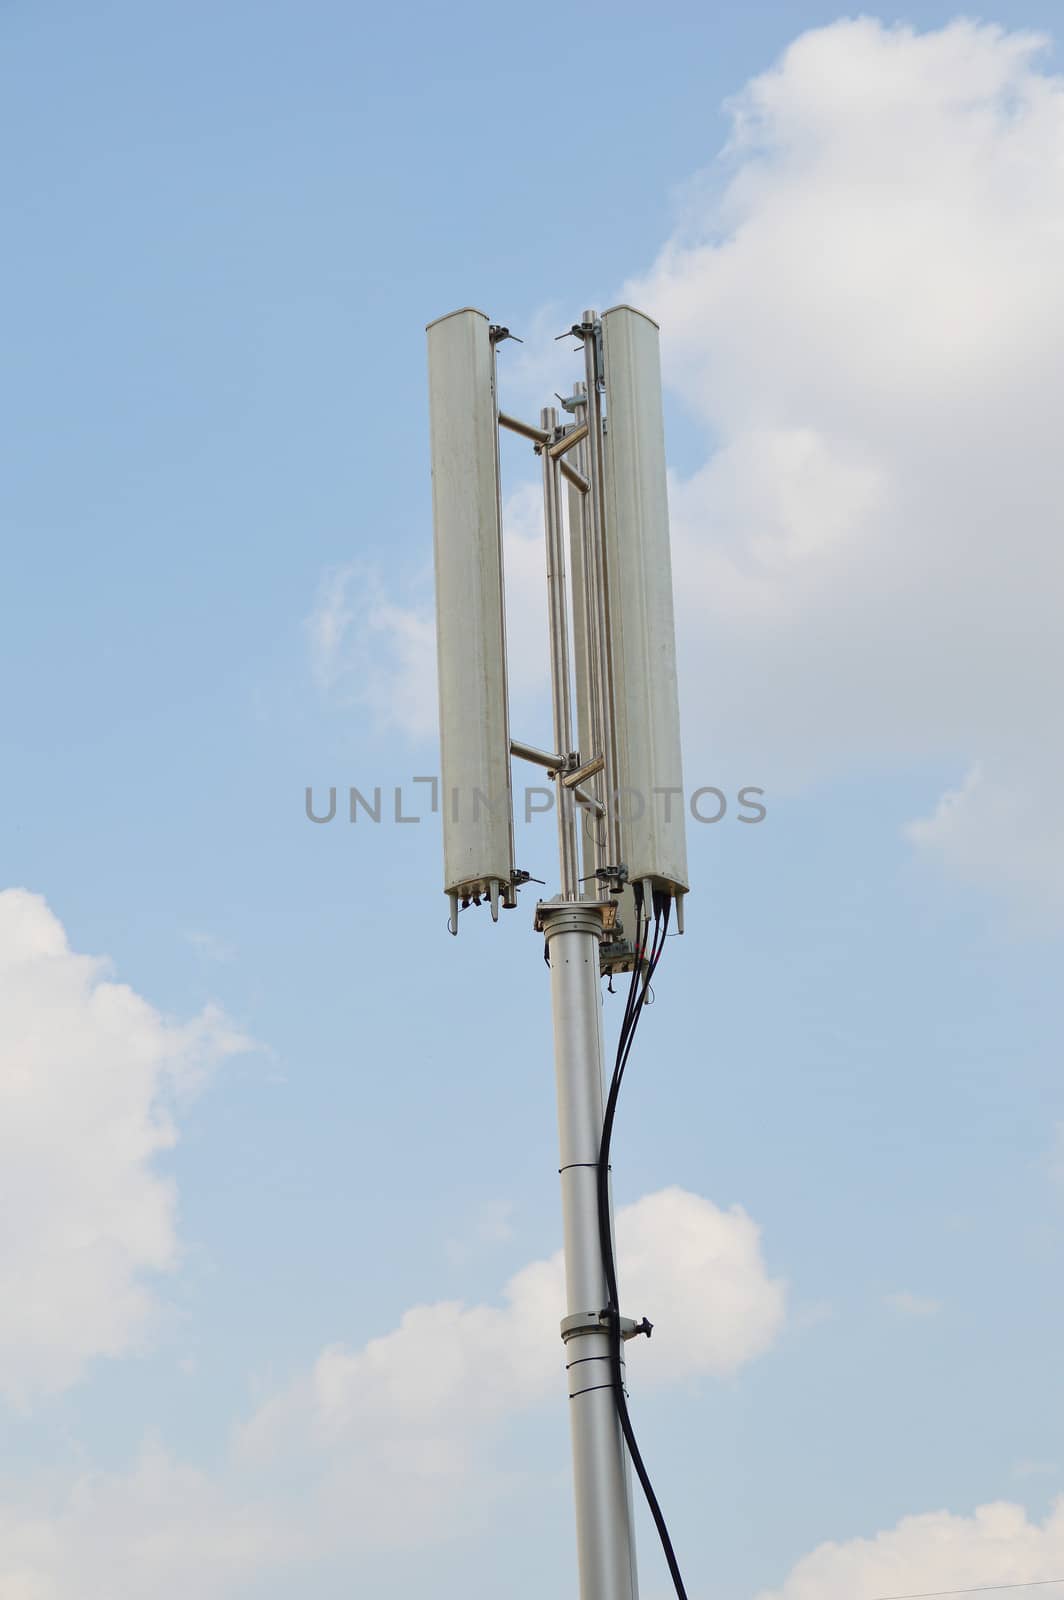 Telecommunications pole by Lekchangply